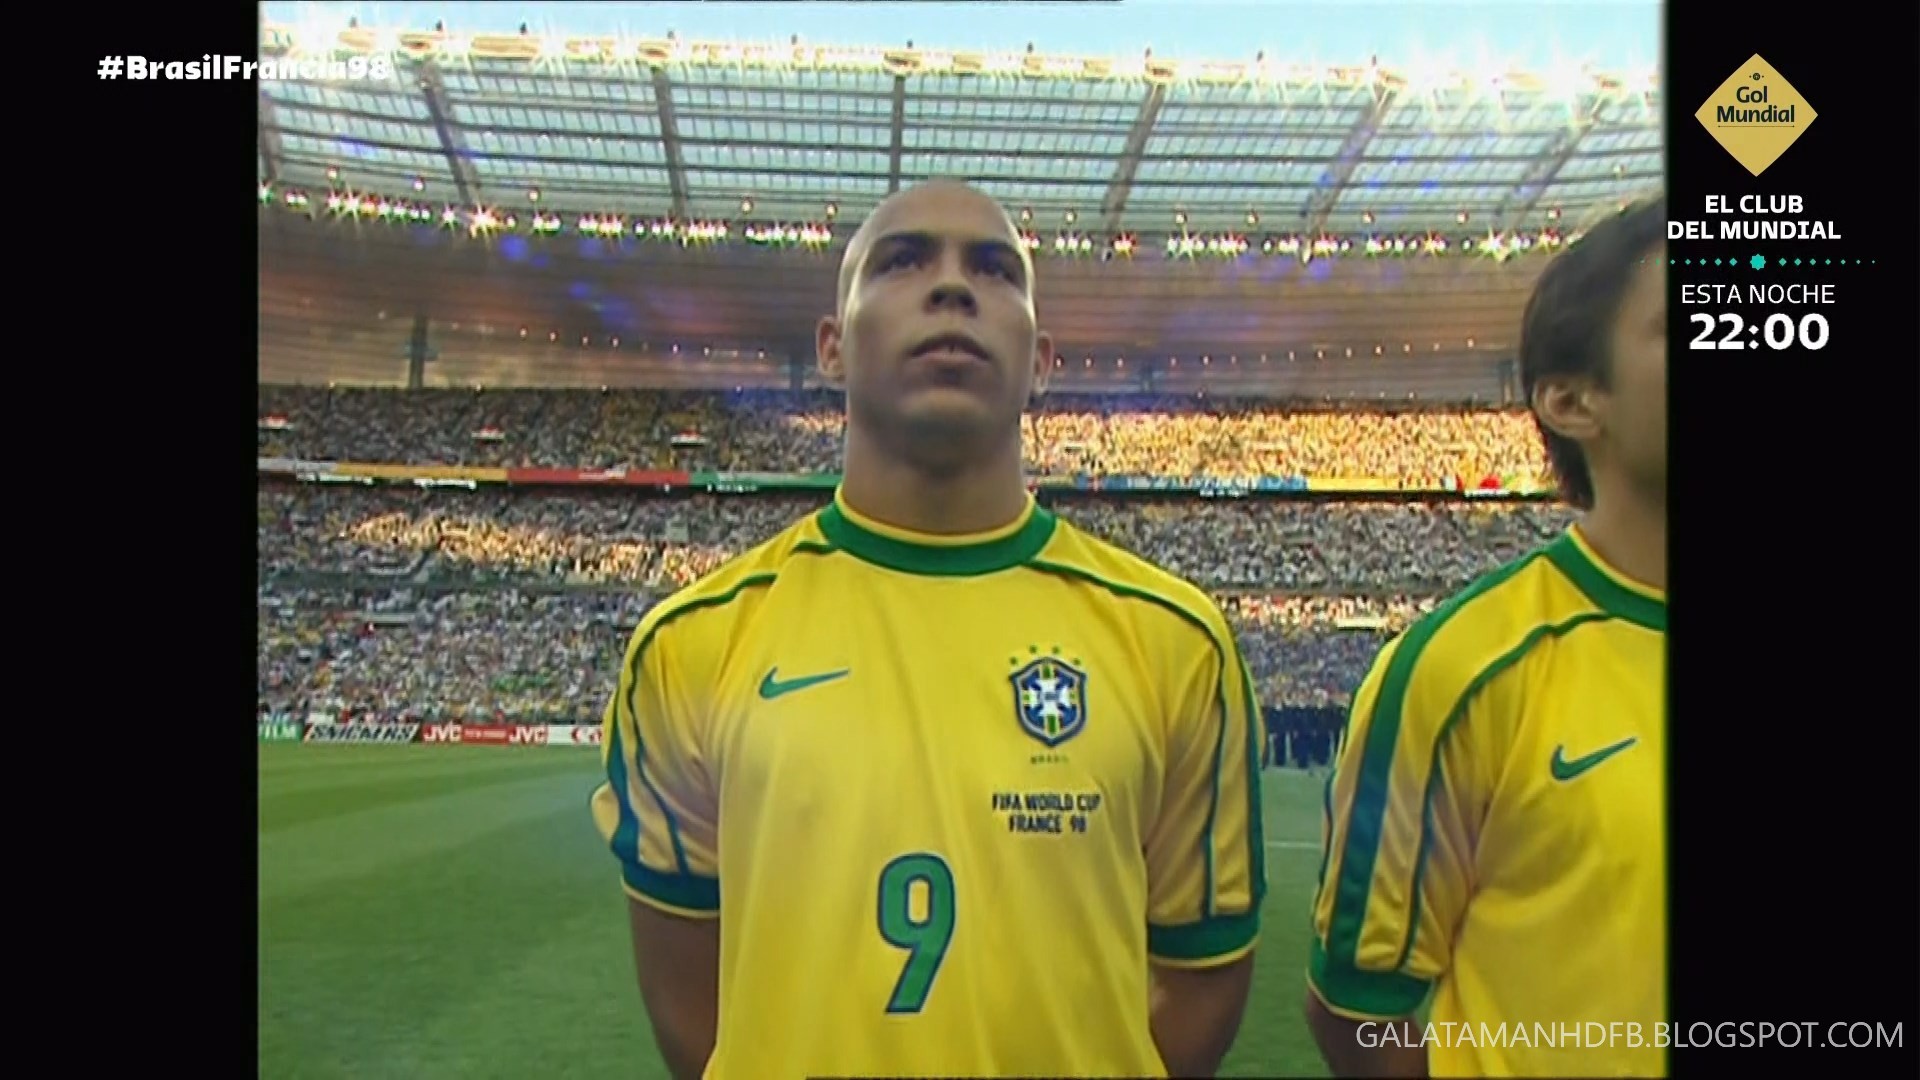 Final del mundial 2002 brasil vs alemania